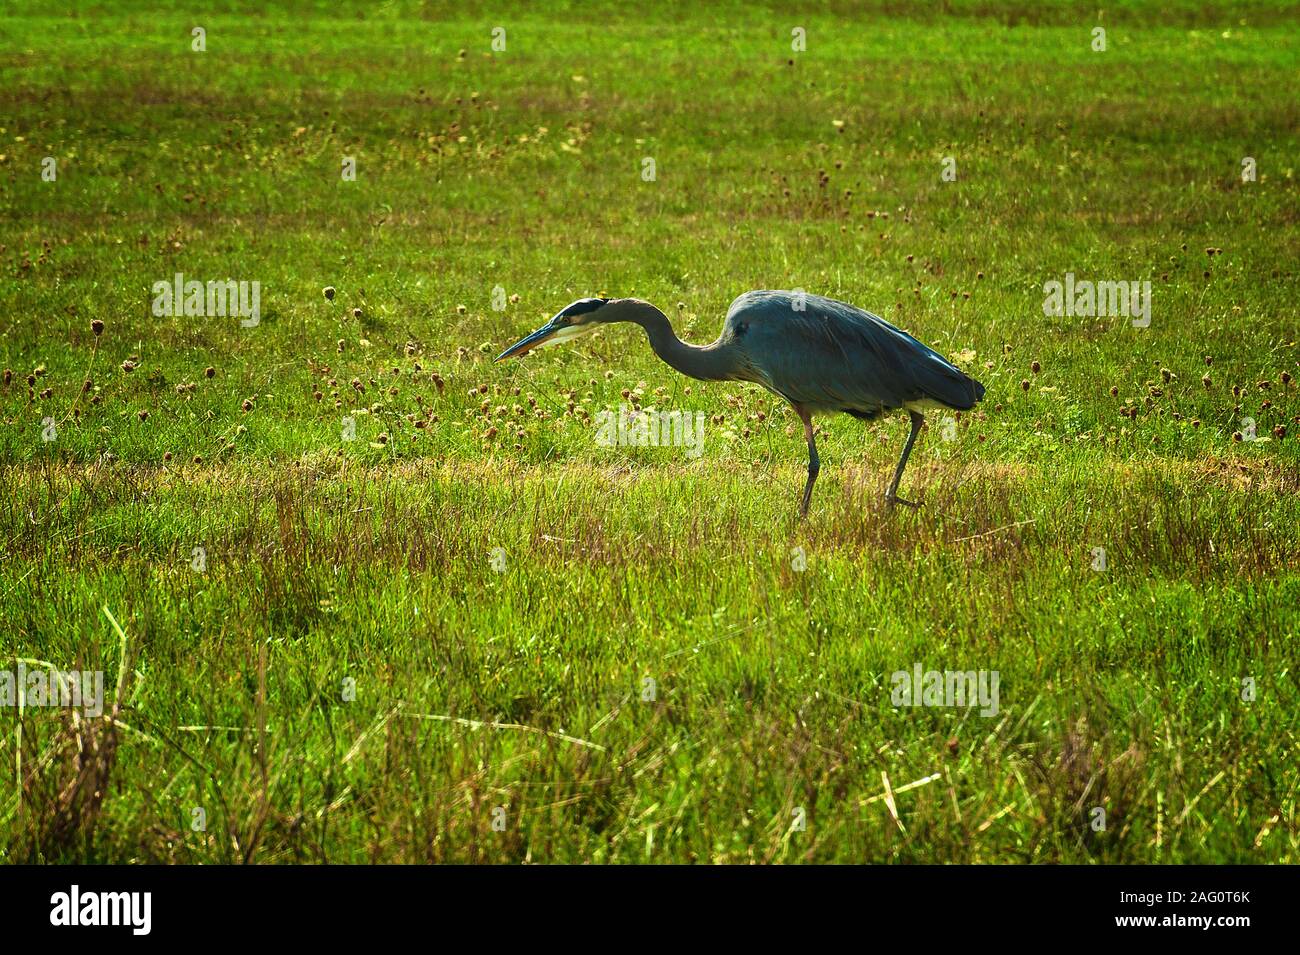 Una gran garza azul, un gran pájaro, la caza con fines alimentarios en un campo Foto de stock